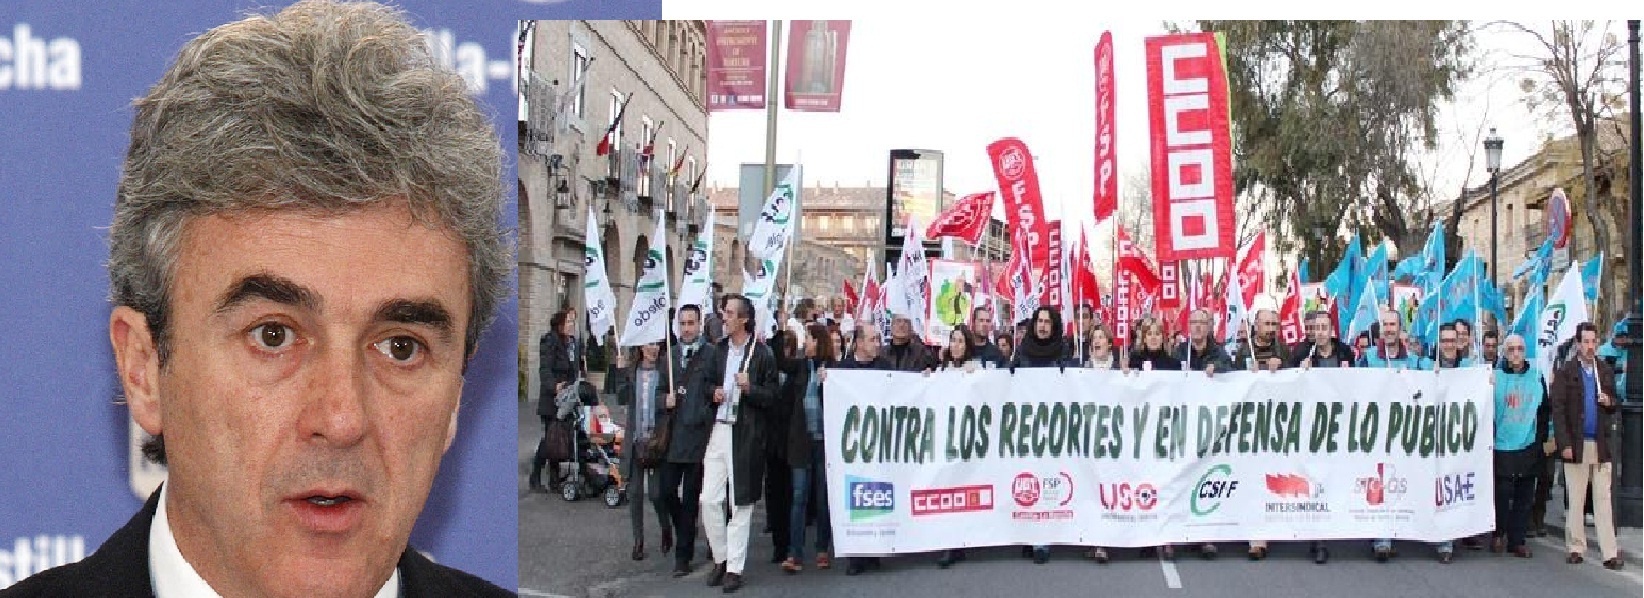 Unos 100.000 trabajadores públicos llamados a secundar la huelga en el País Vasco